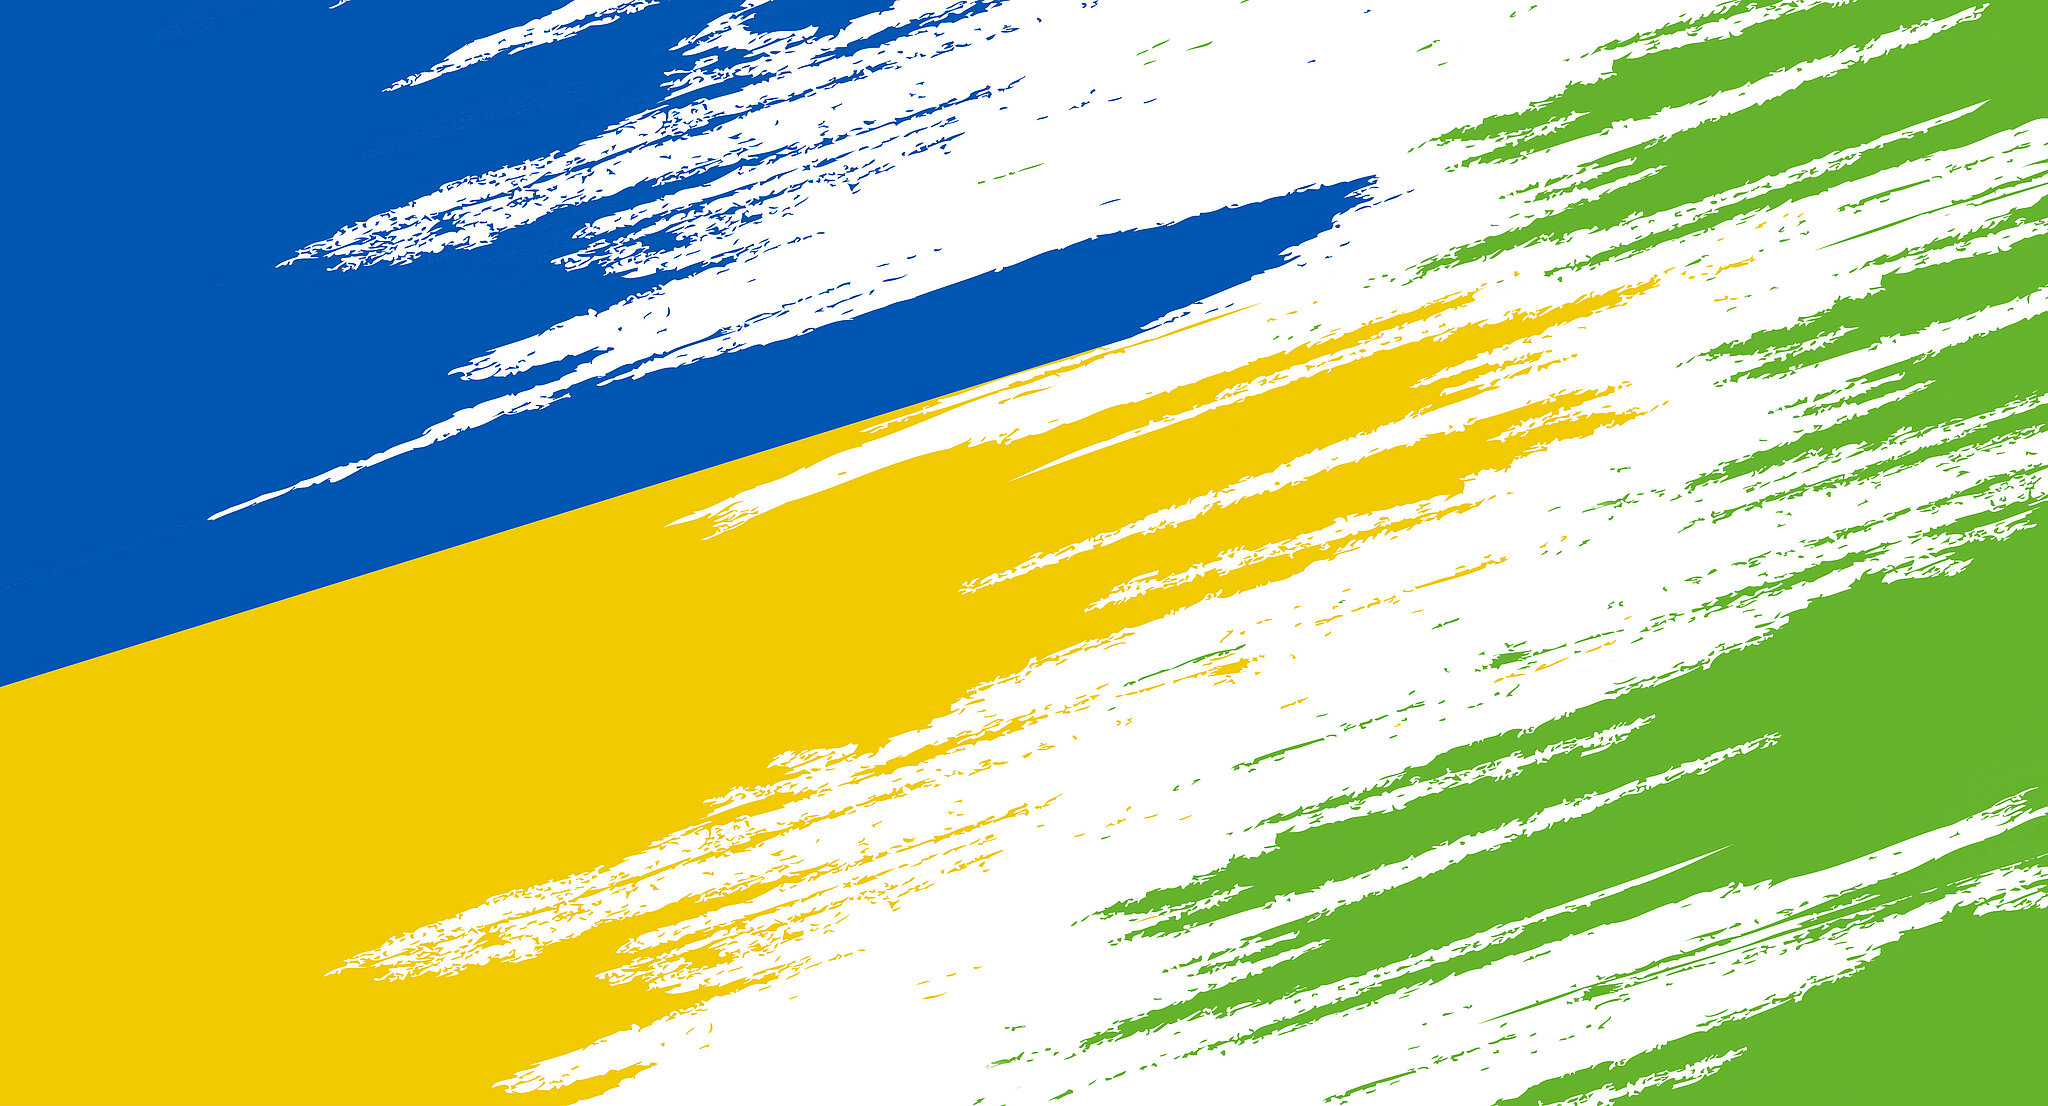 Ukrainische Flaggenfarben (blau und gelb) gehen in das Grün von persona service über